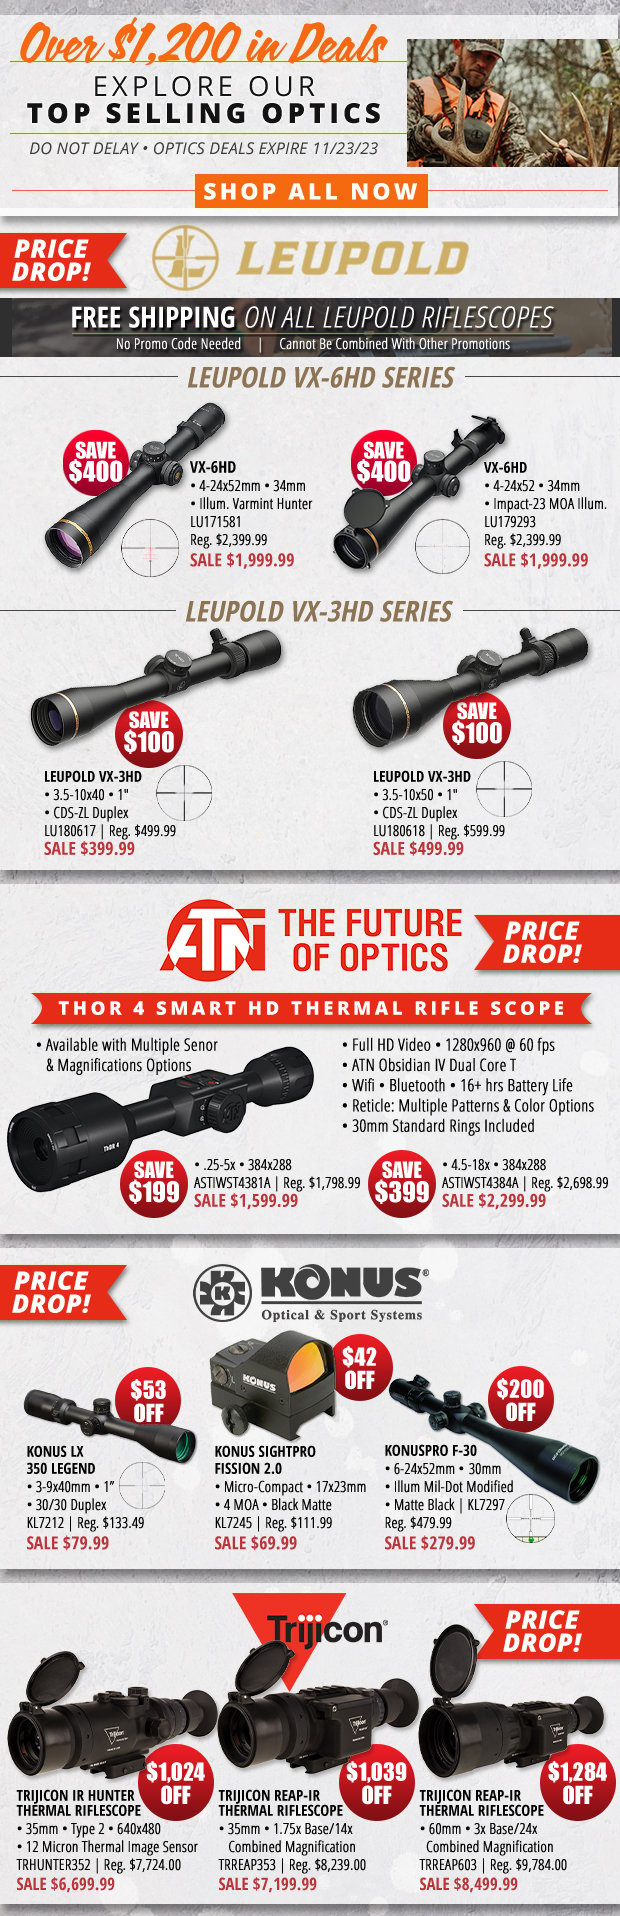 Over $1,200 in Deals on Top Optics